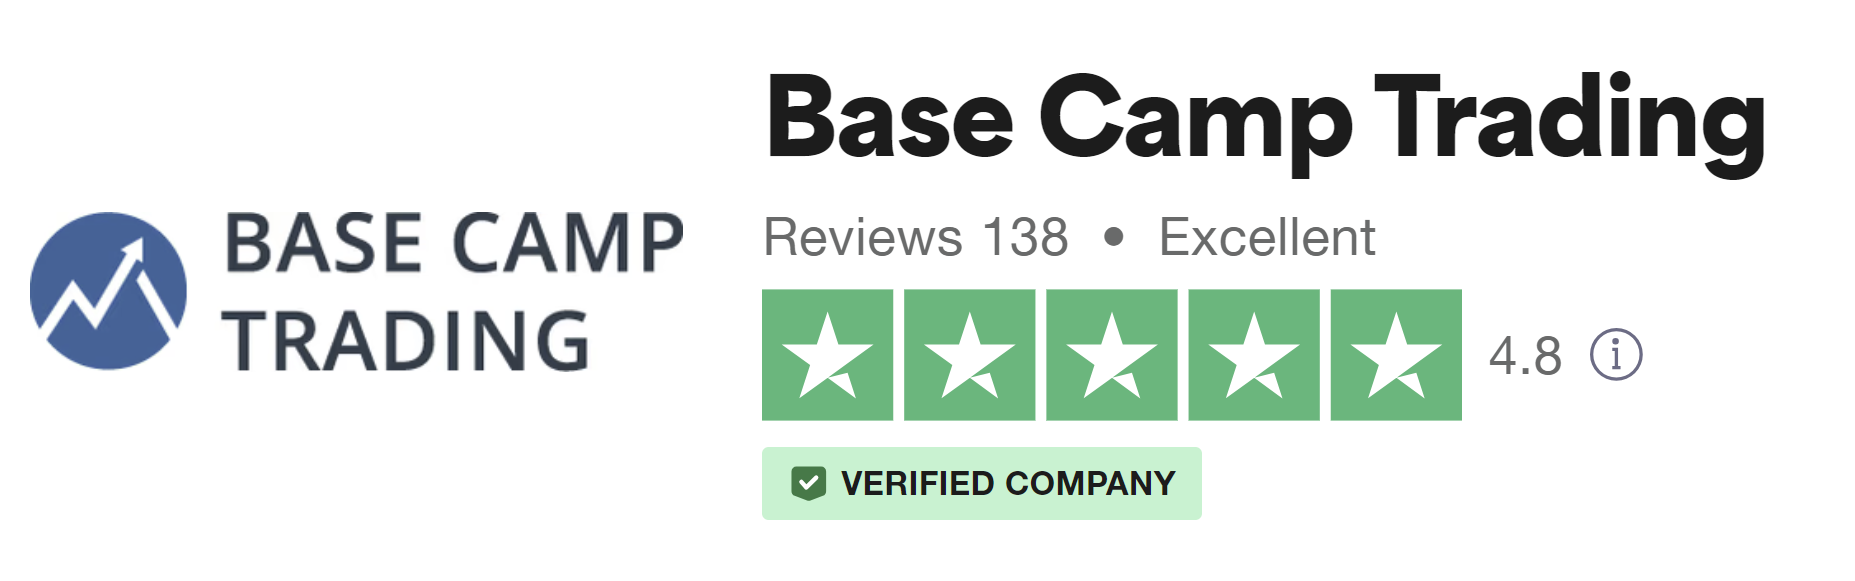 Basecamptrading Reviews